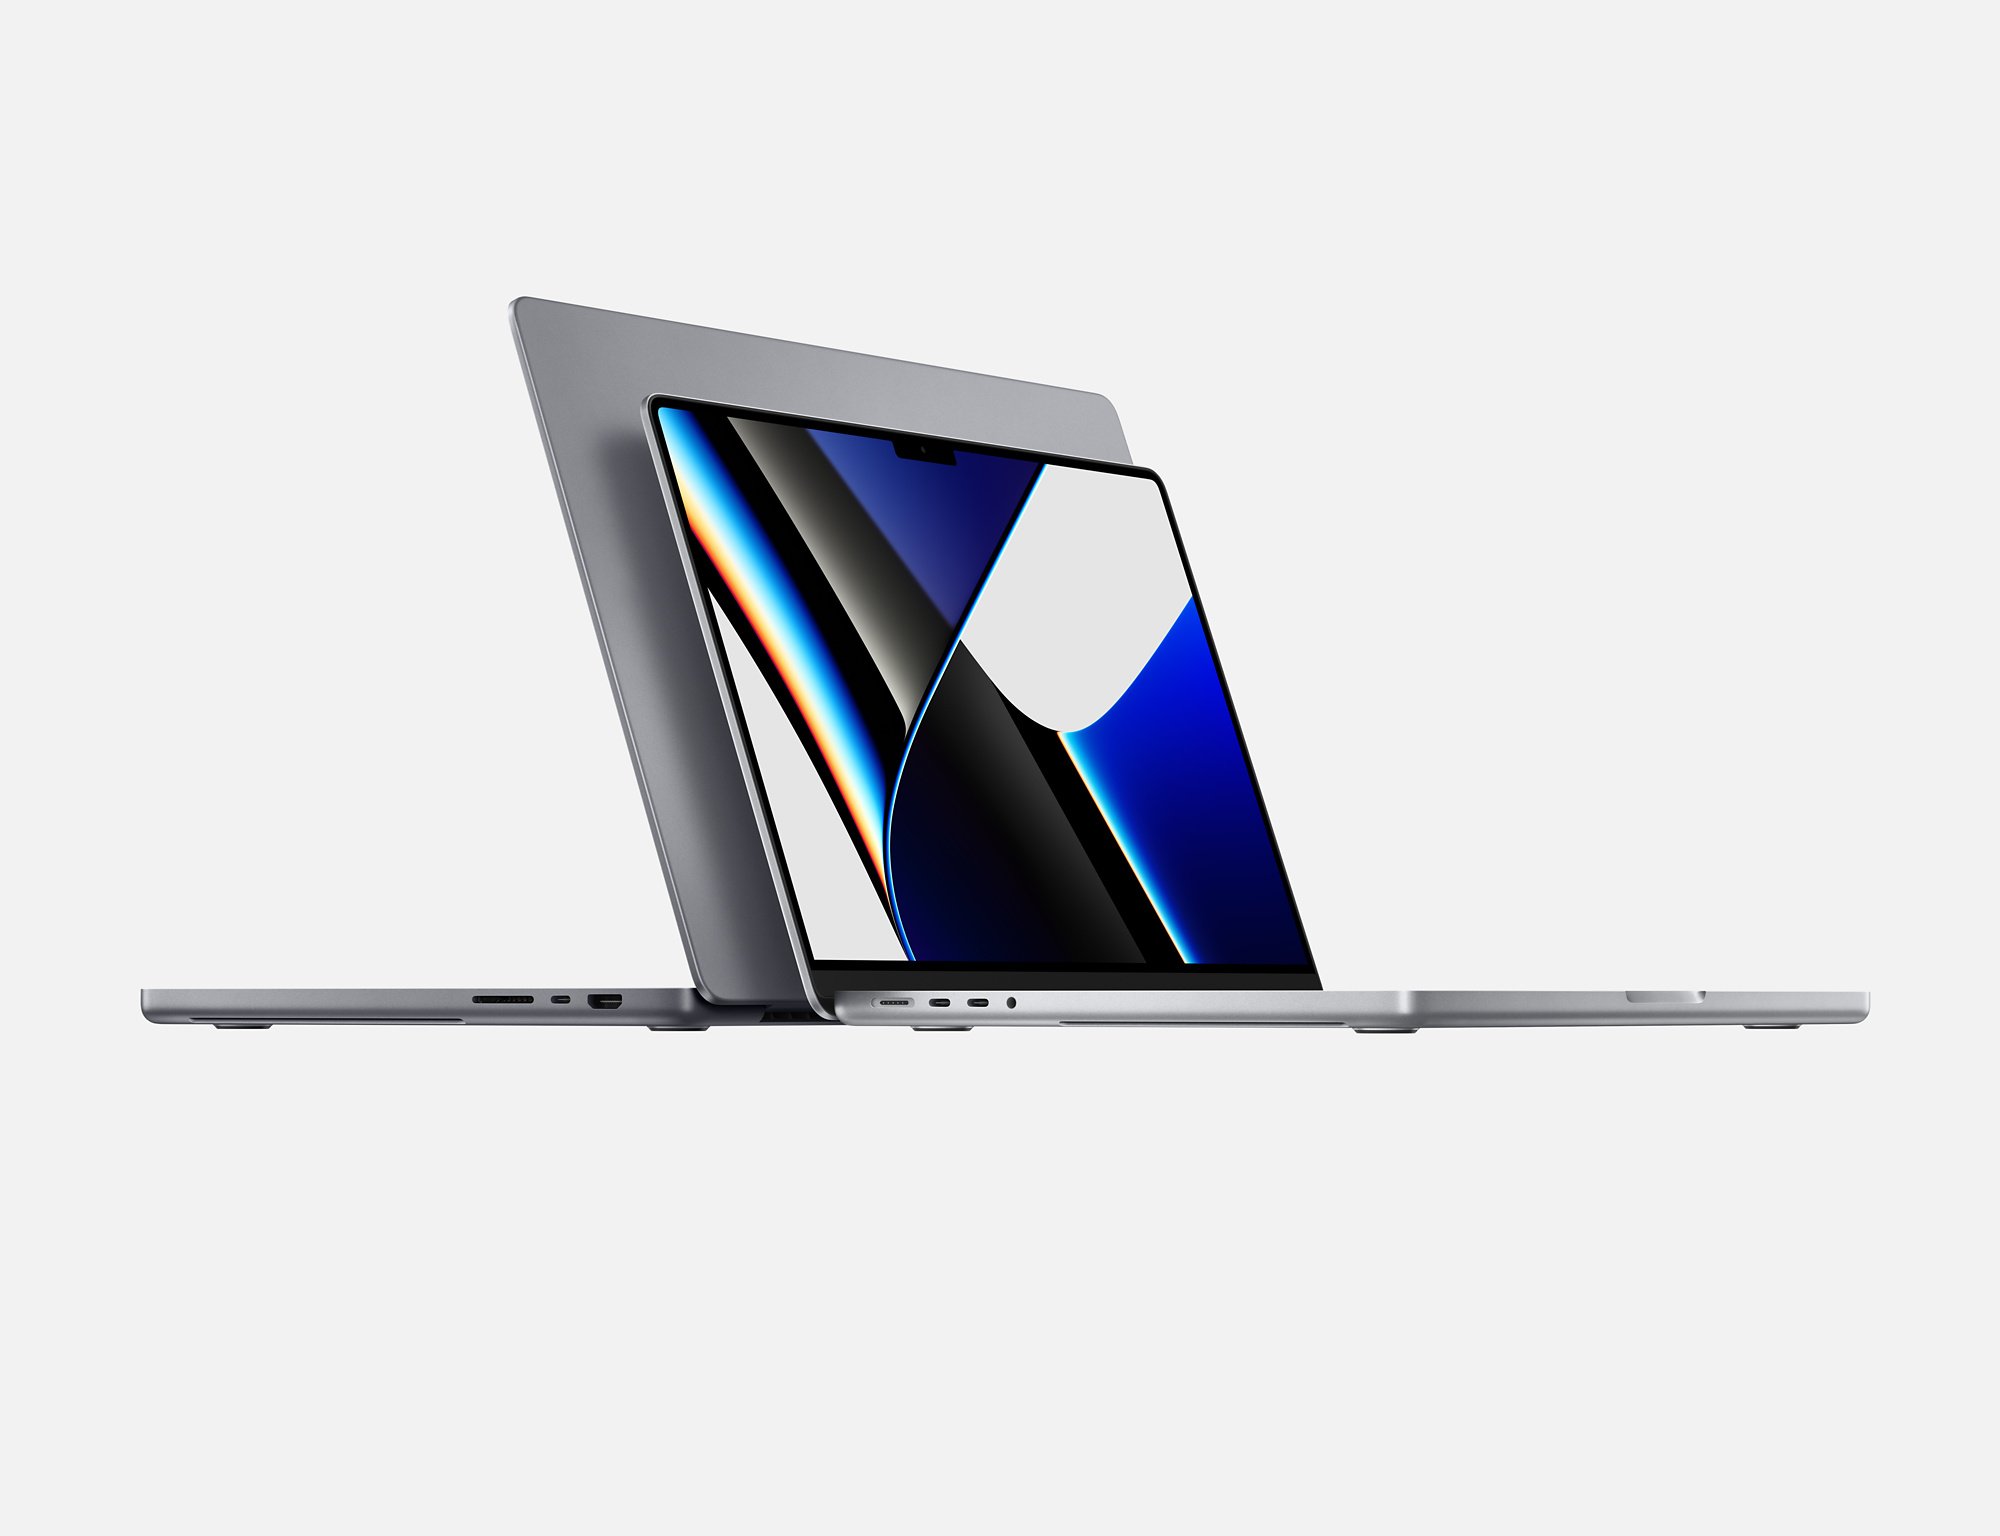 Apple showed updated MacBook Pro